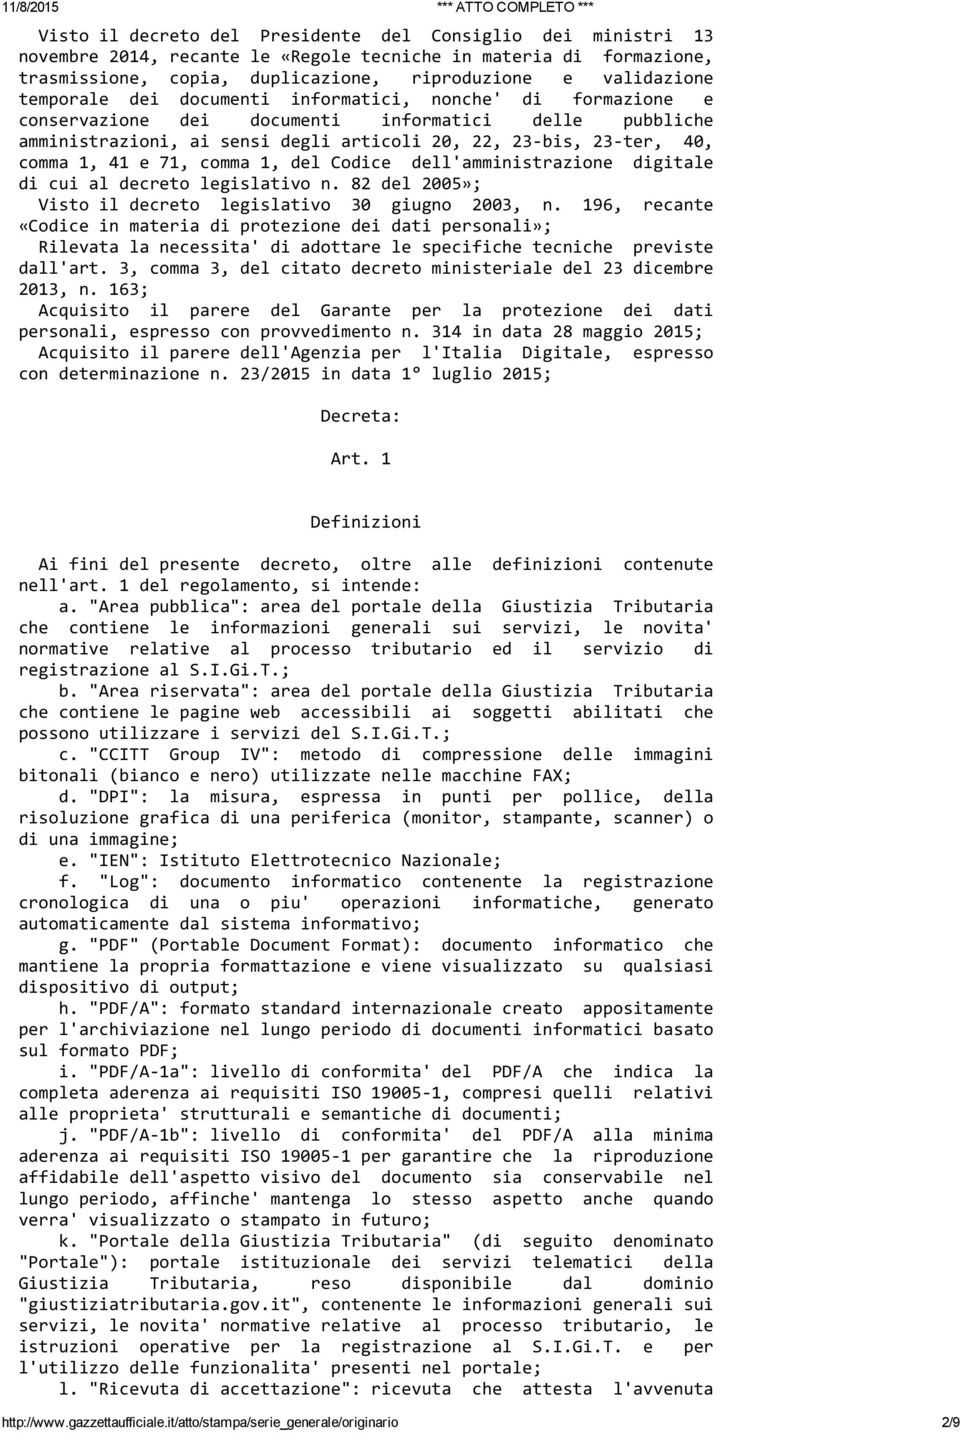 71, comma 1, del Codice dell'amministrazione digitale di cui al decreto legislativo n. 82 del 2005»; Visto il decreto legislativo 30 giugno 2003, n.